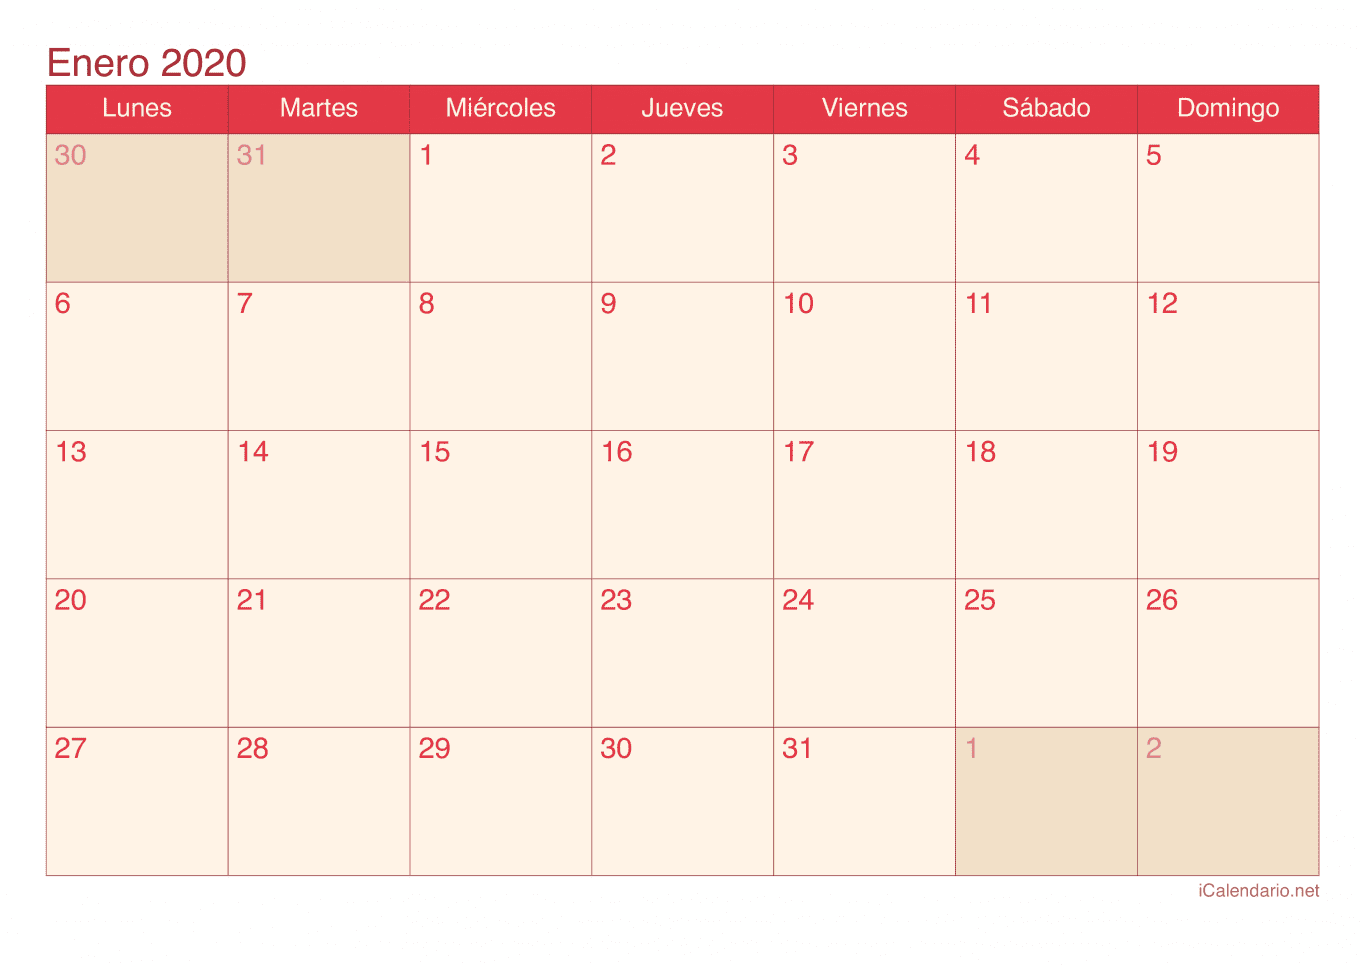 Calendario de enero 2020 - Cherry